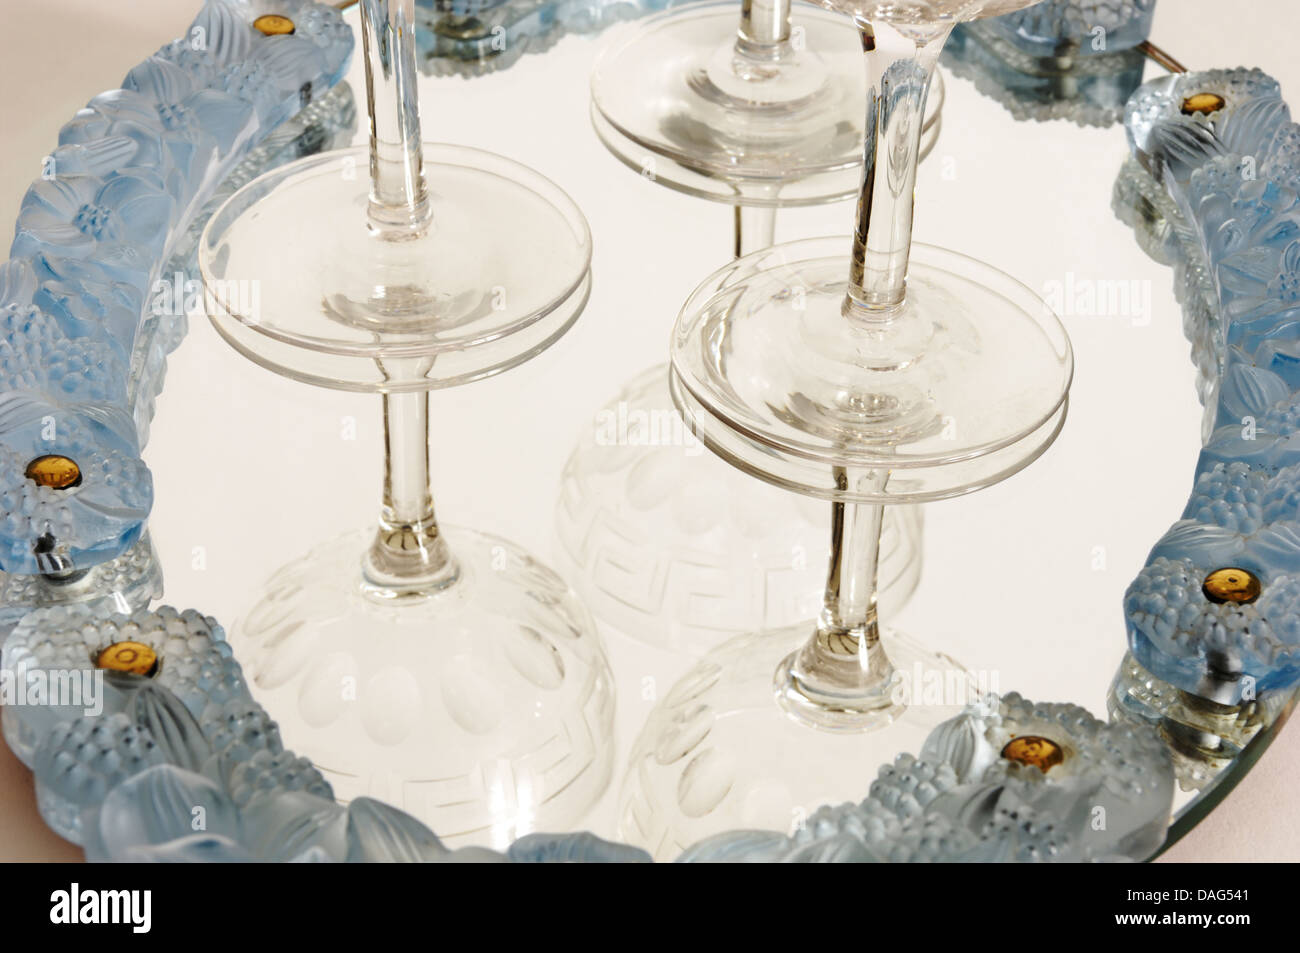 Une période art déco, probablement français, bac en verre avec verres de champagne. Vers 1920 - 1930. Sous-verre opalescent. Banque D'Images